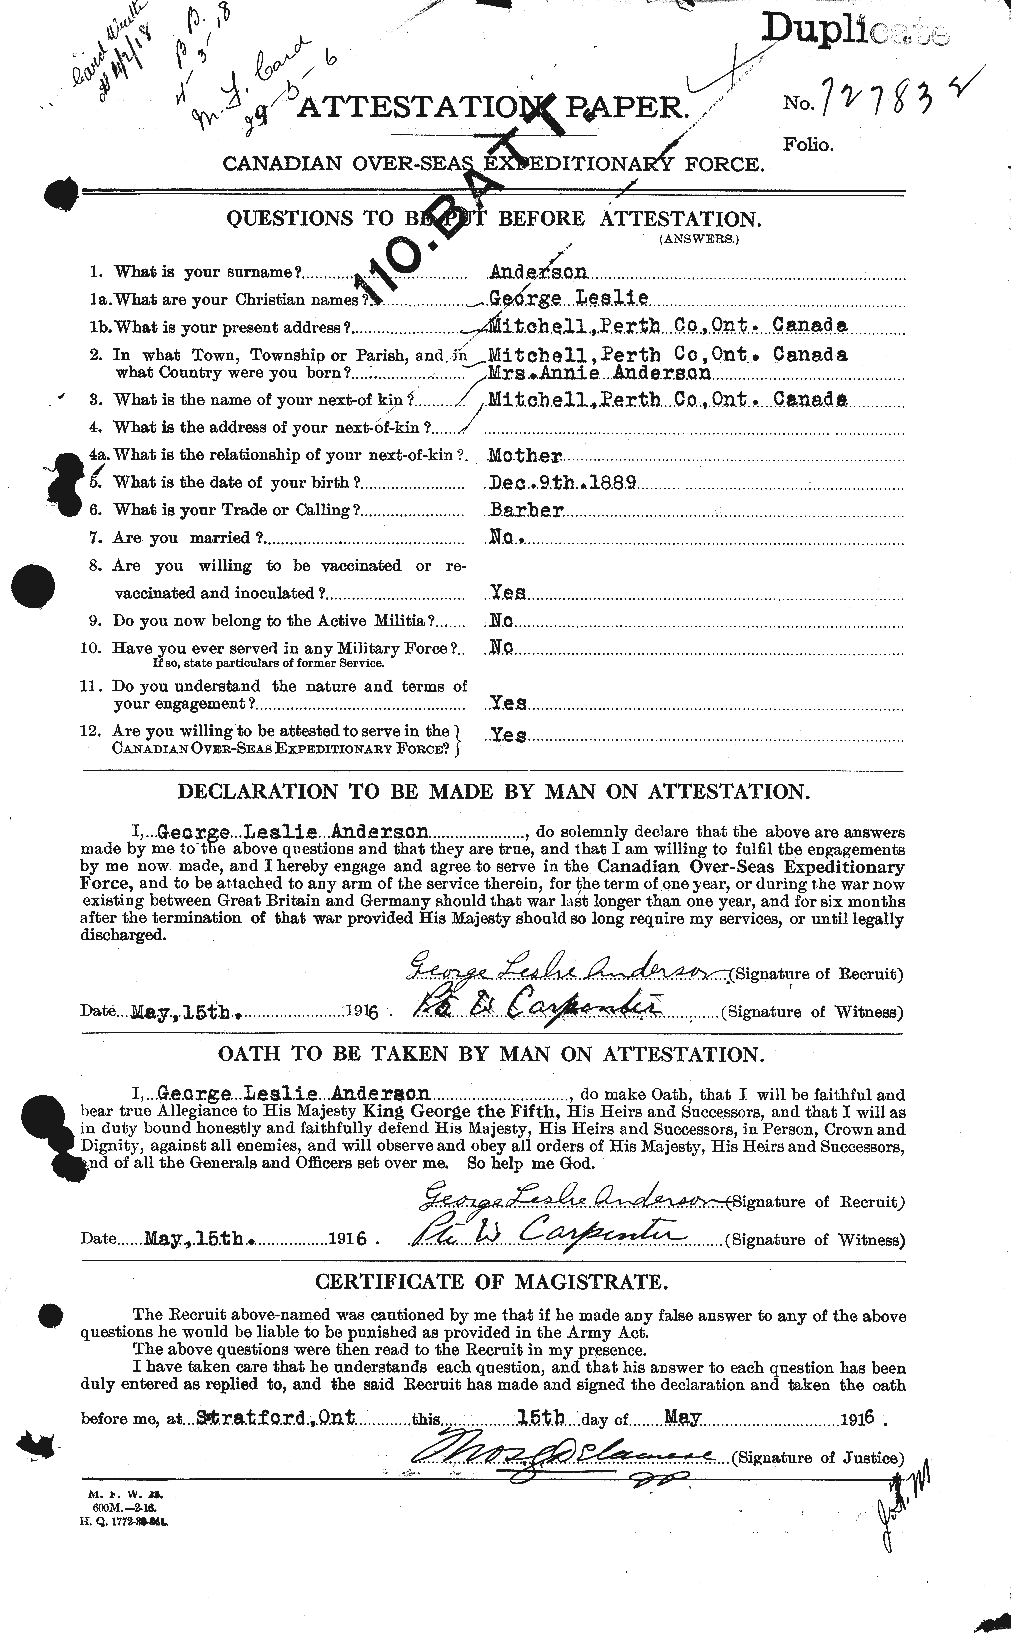 Dossiers du Personnel de la Première Guerre mondiale - CEC 209714a